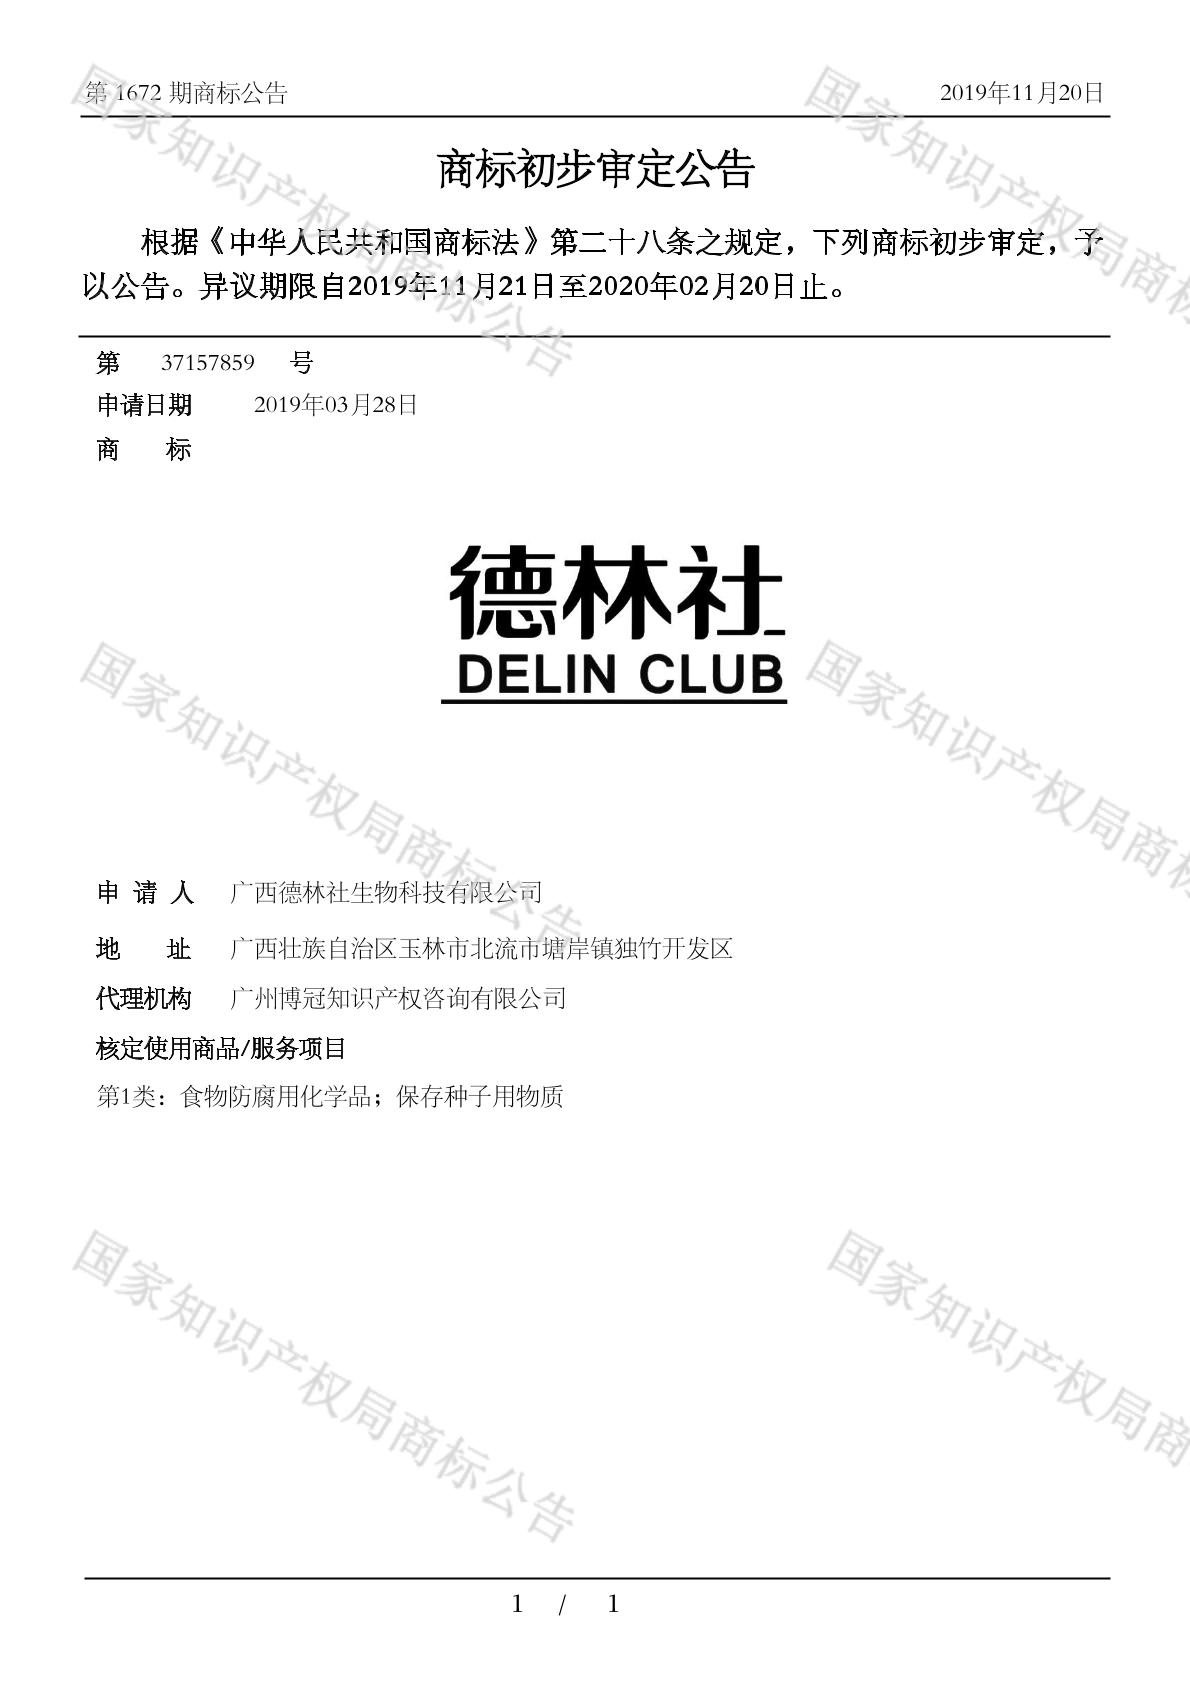 德林社 delin club